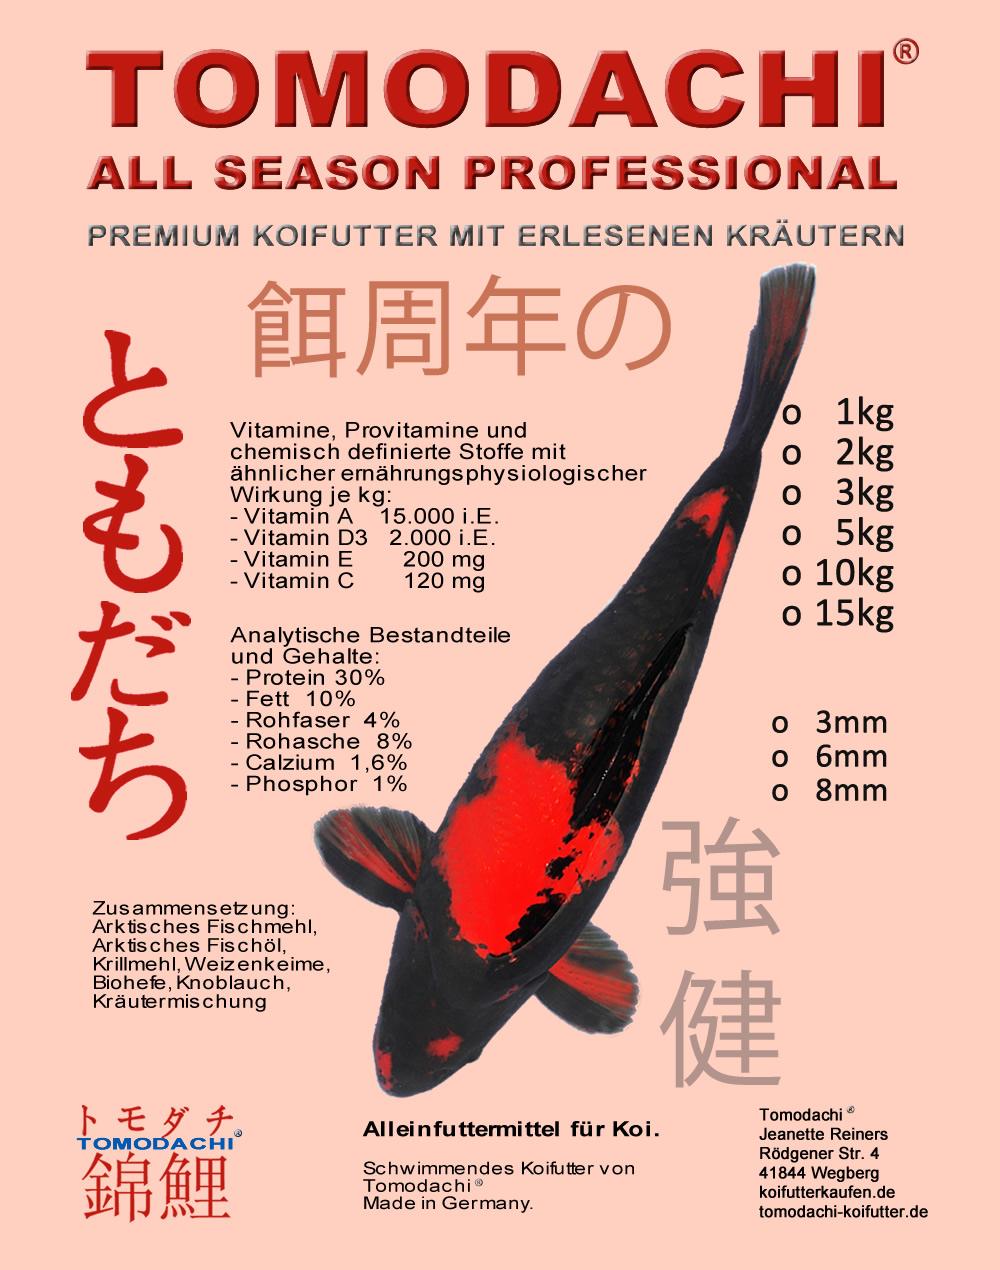 All Season Professional - das High-End Ganzjahresfutter von Tomodachi mit erlesenen Koifutterzutaten für vitale und bildschöne Koi